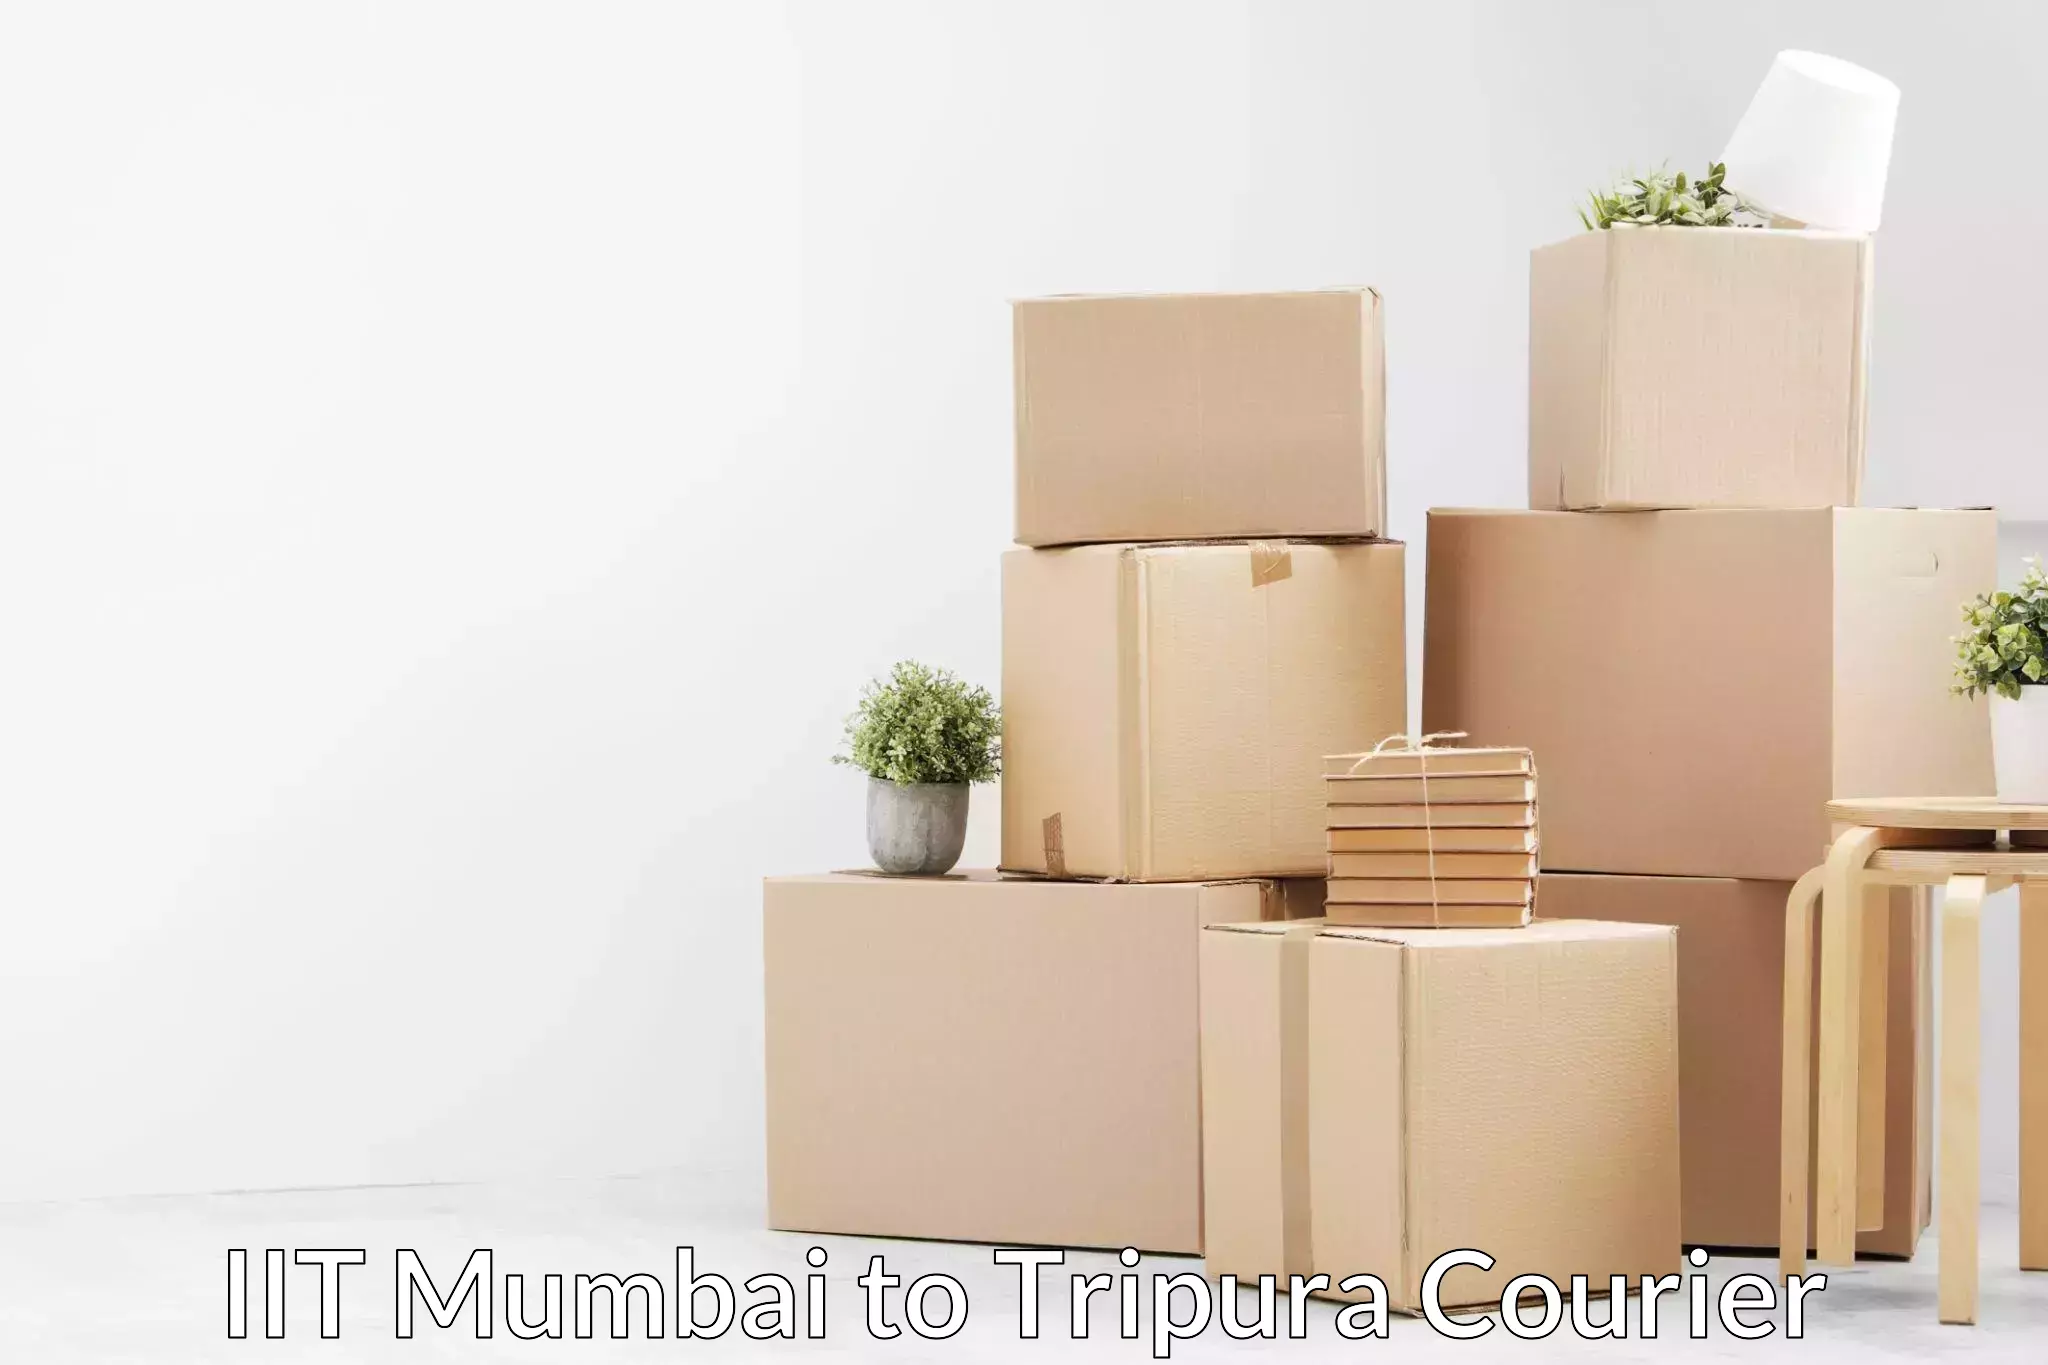 Home shifting experts IIT Mumbai to Tripura